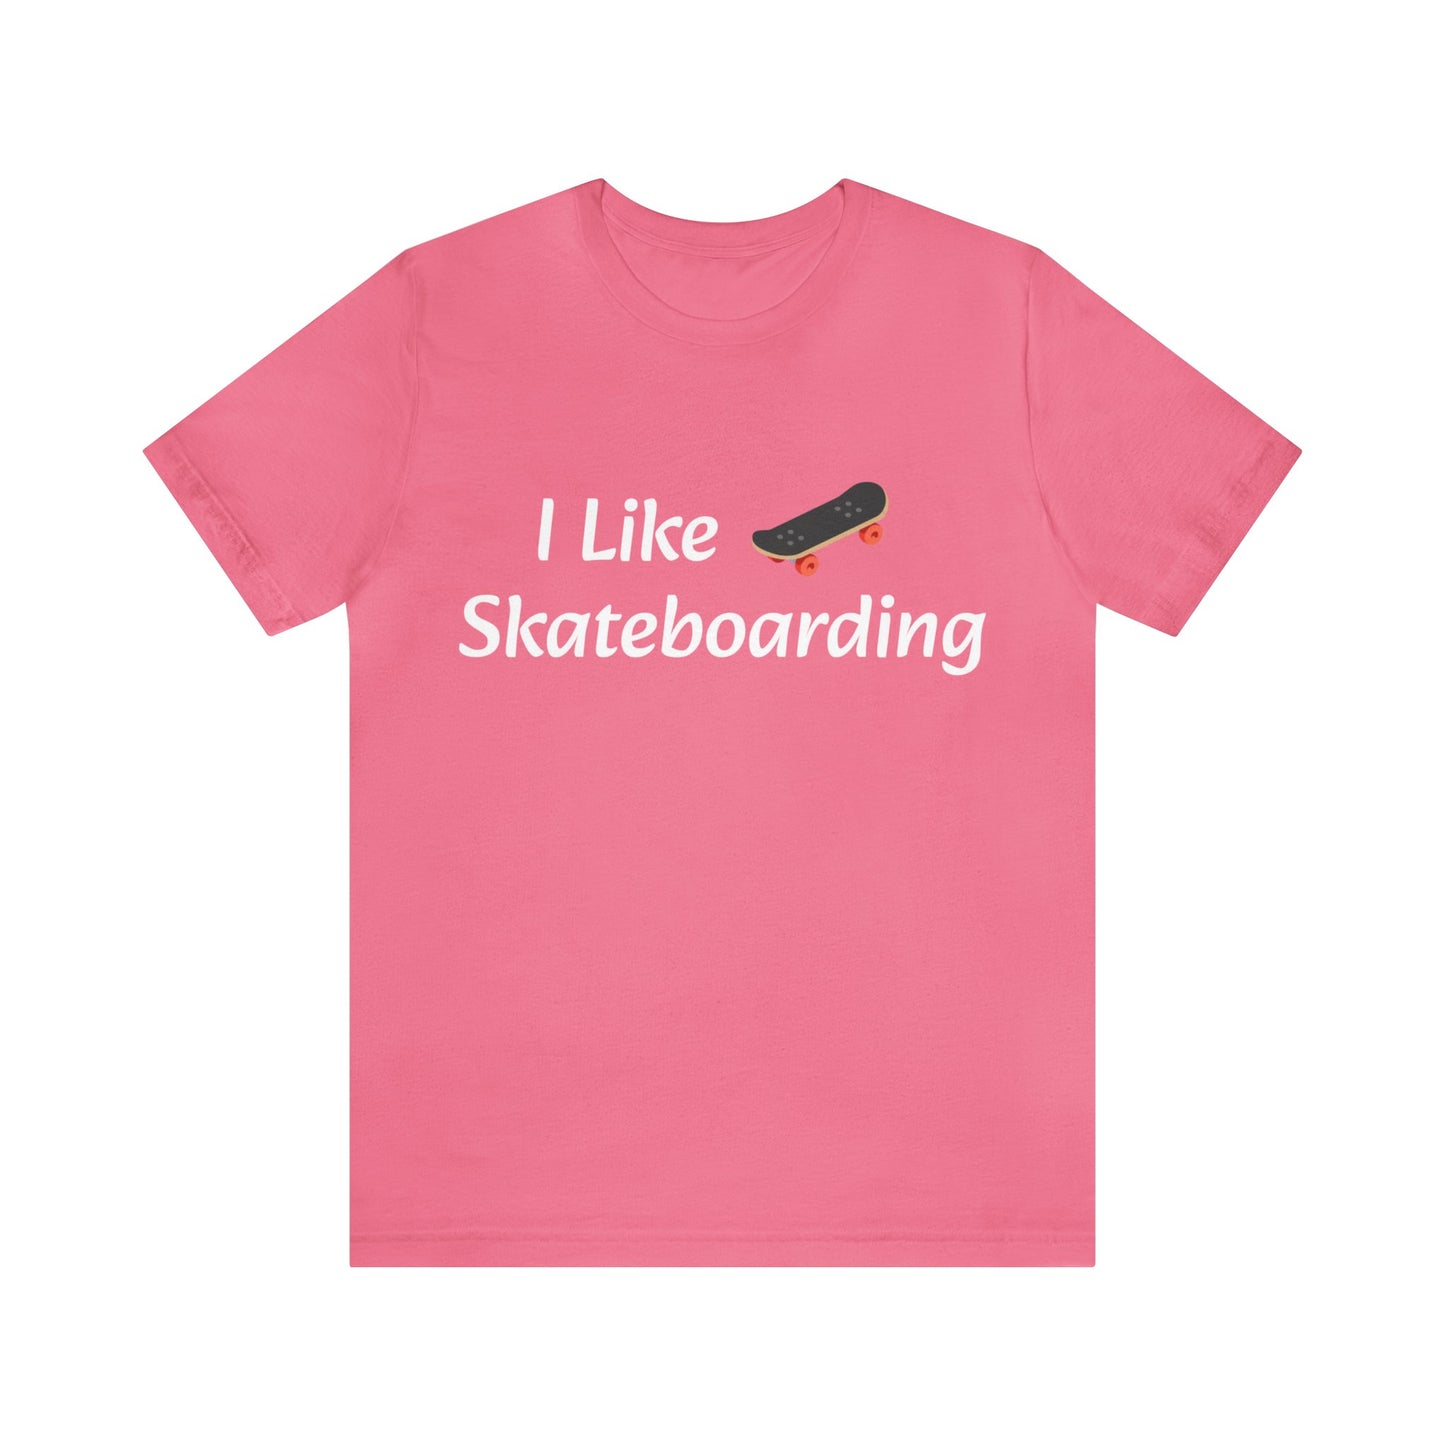 Skateboarder T-Shirt | Skateboarder Gift Ideas | For Skateboarding Hobby Charity Pink T-Shirt Petrova Designs